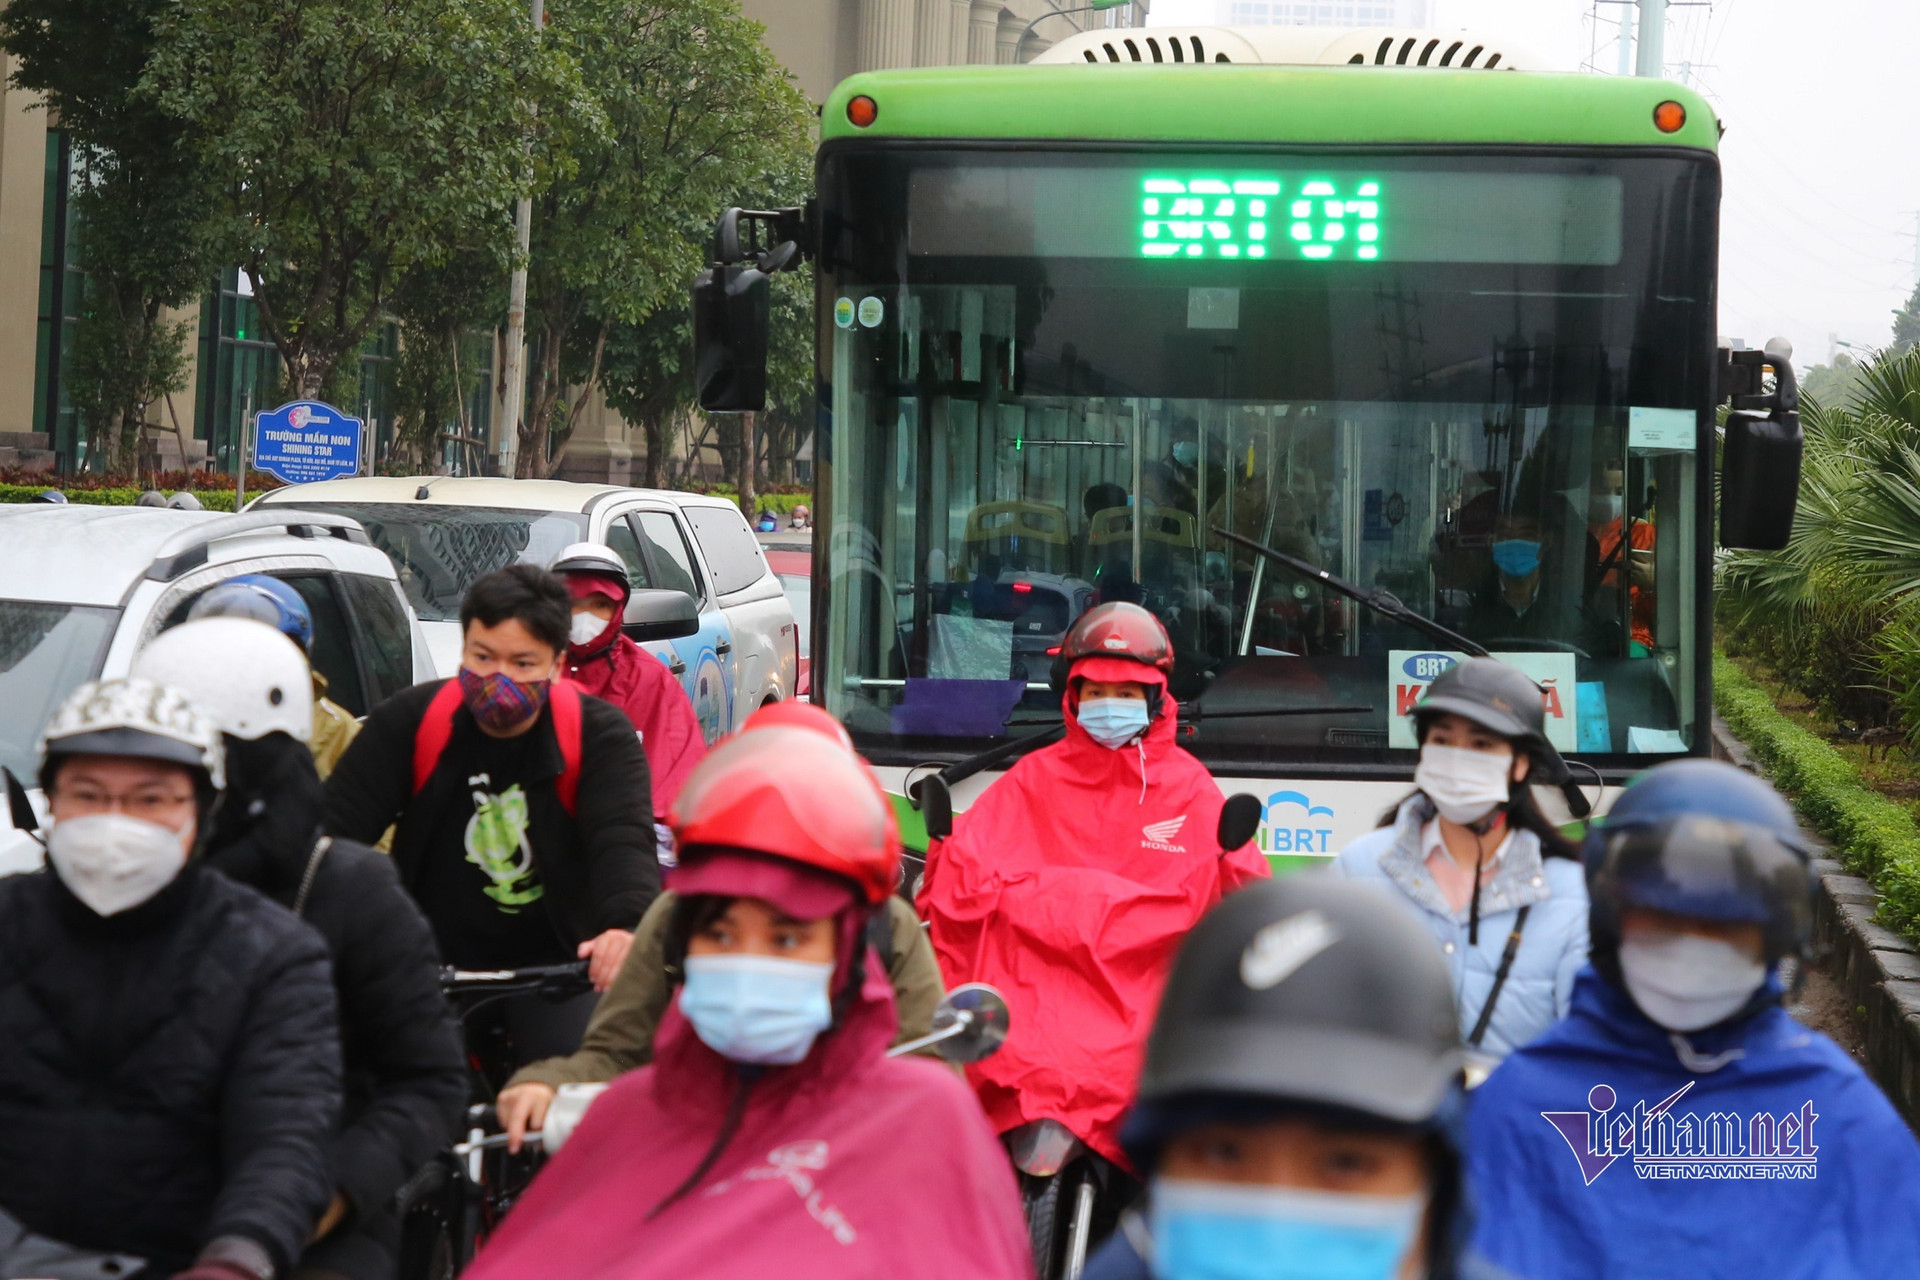 Hà Nội mưa rét, buýt nhanh BRT bị ‘khóa chặt’ giữa dòng xe